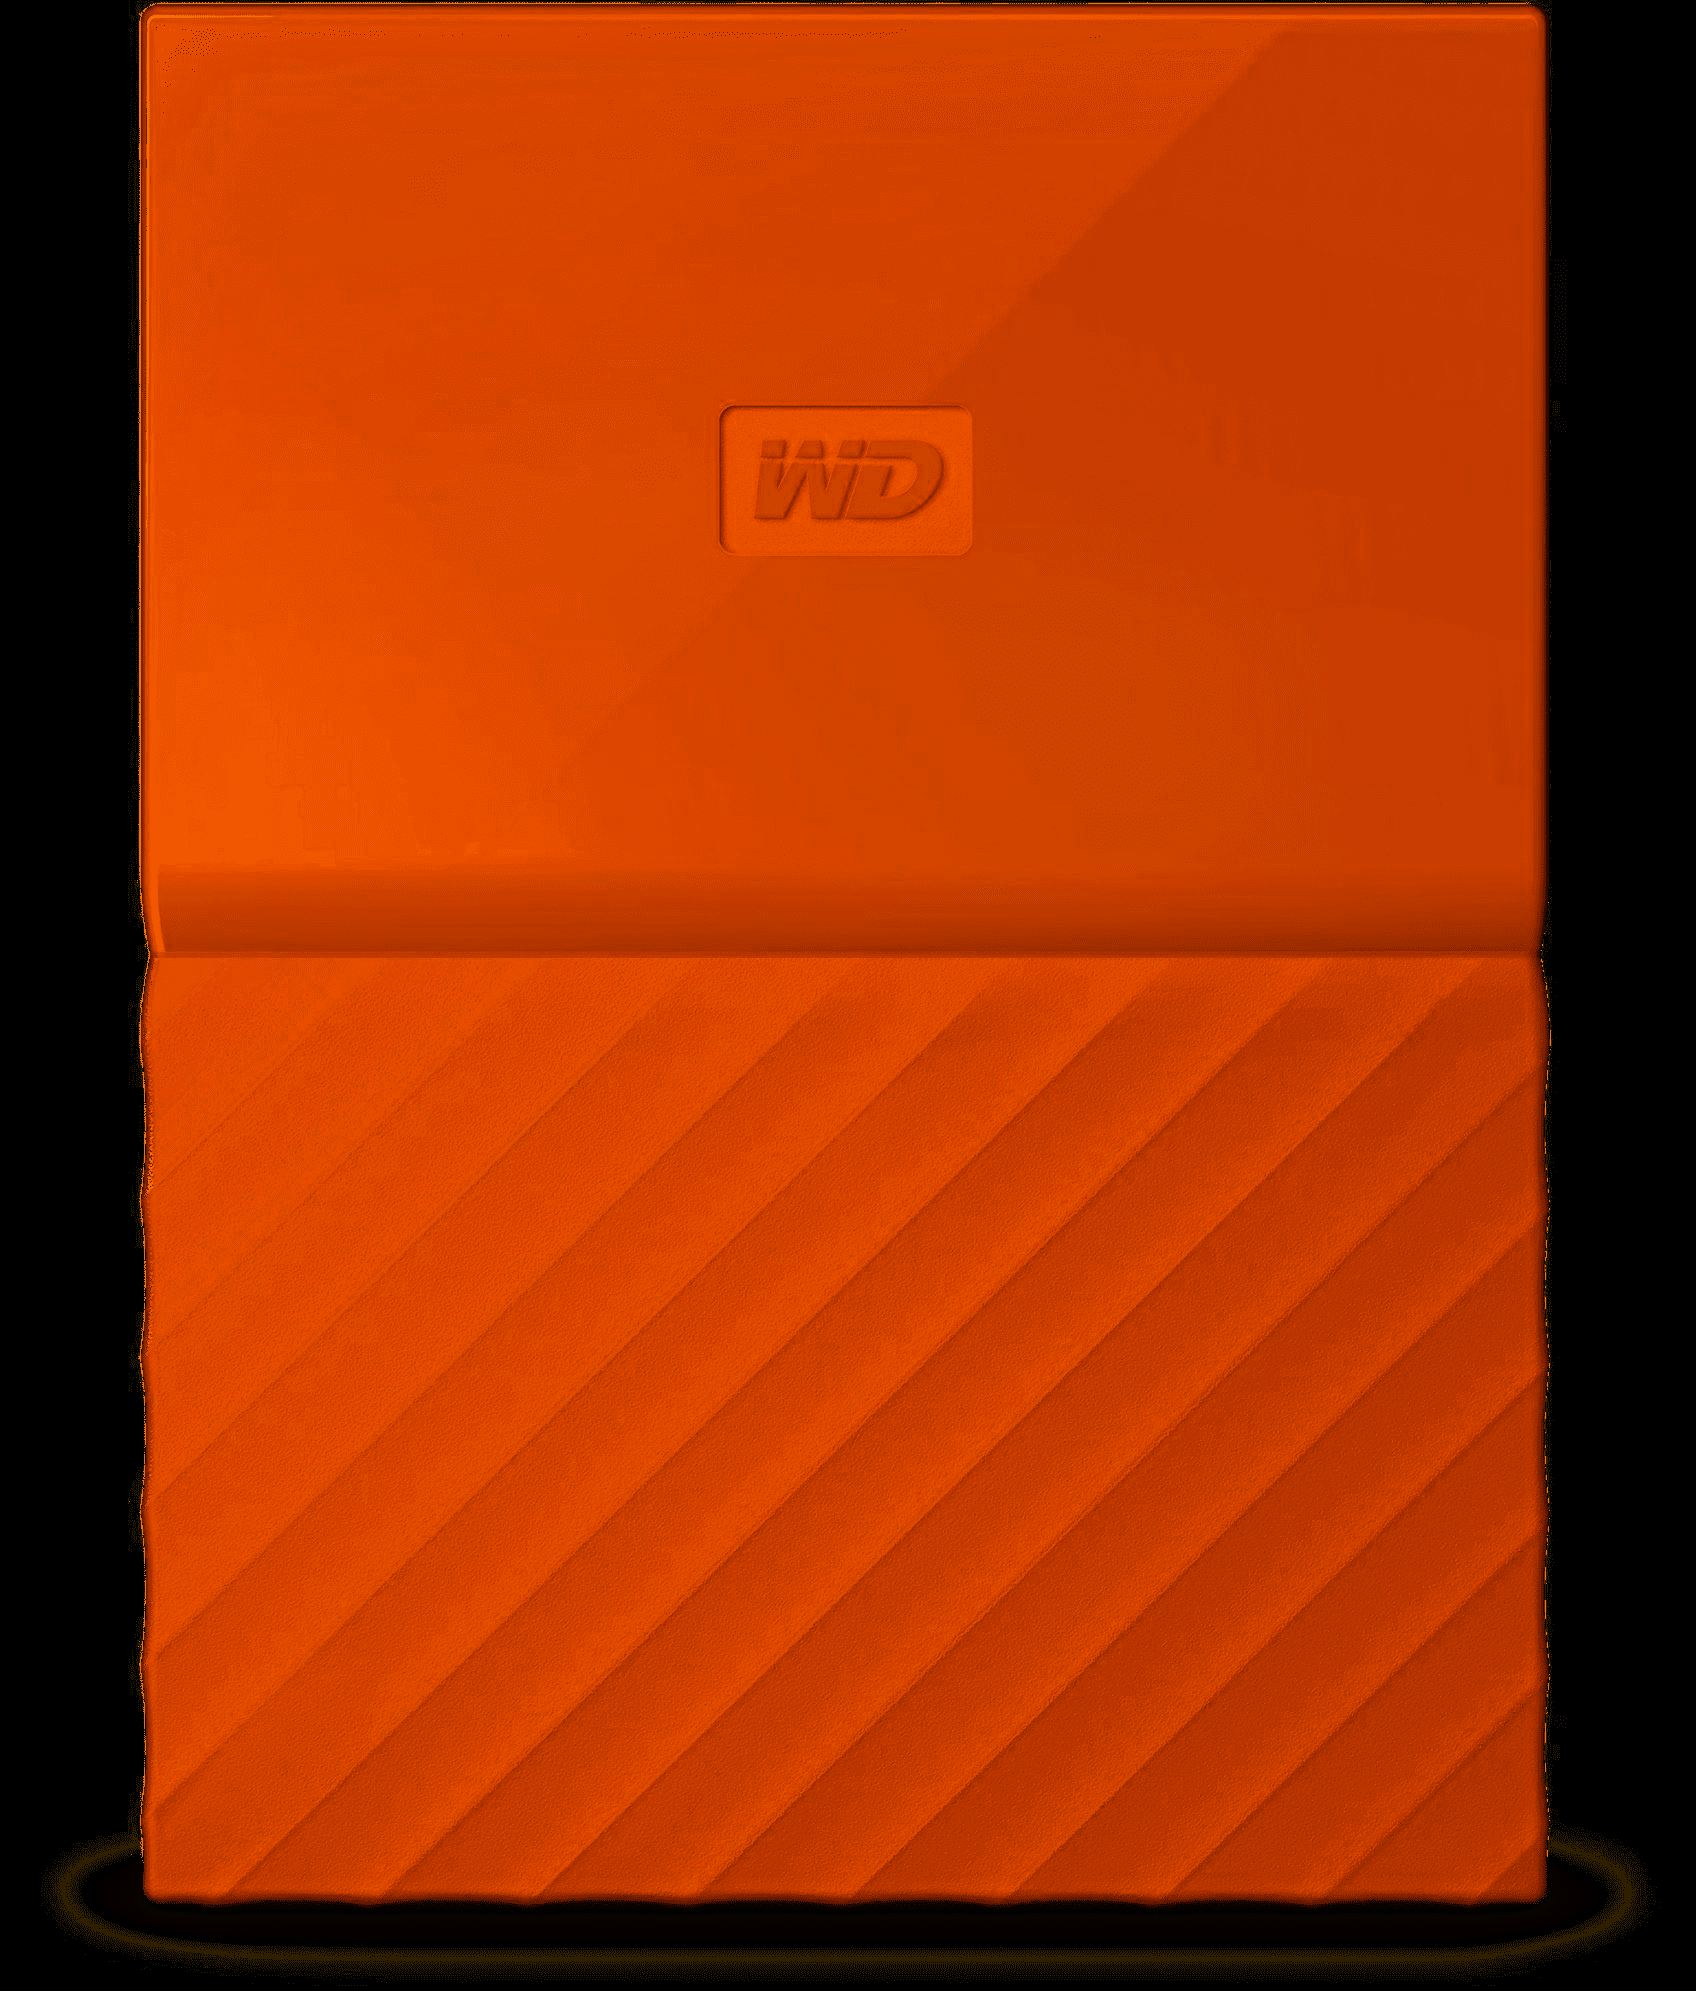 WDBYFT0030BOR-WESN 3TB My Passport USB 3.0 Taşınabilir Harici Hard Disk